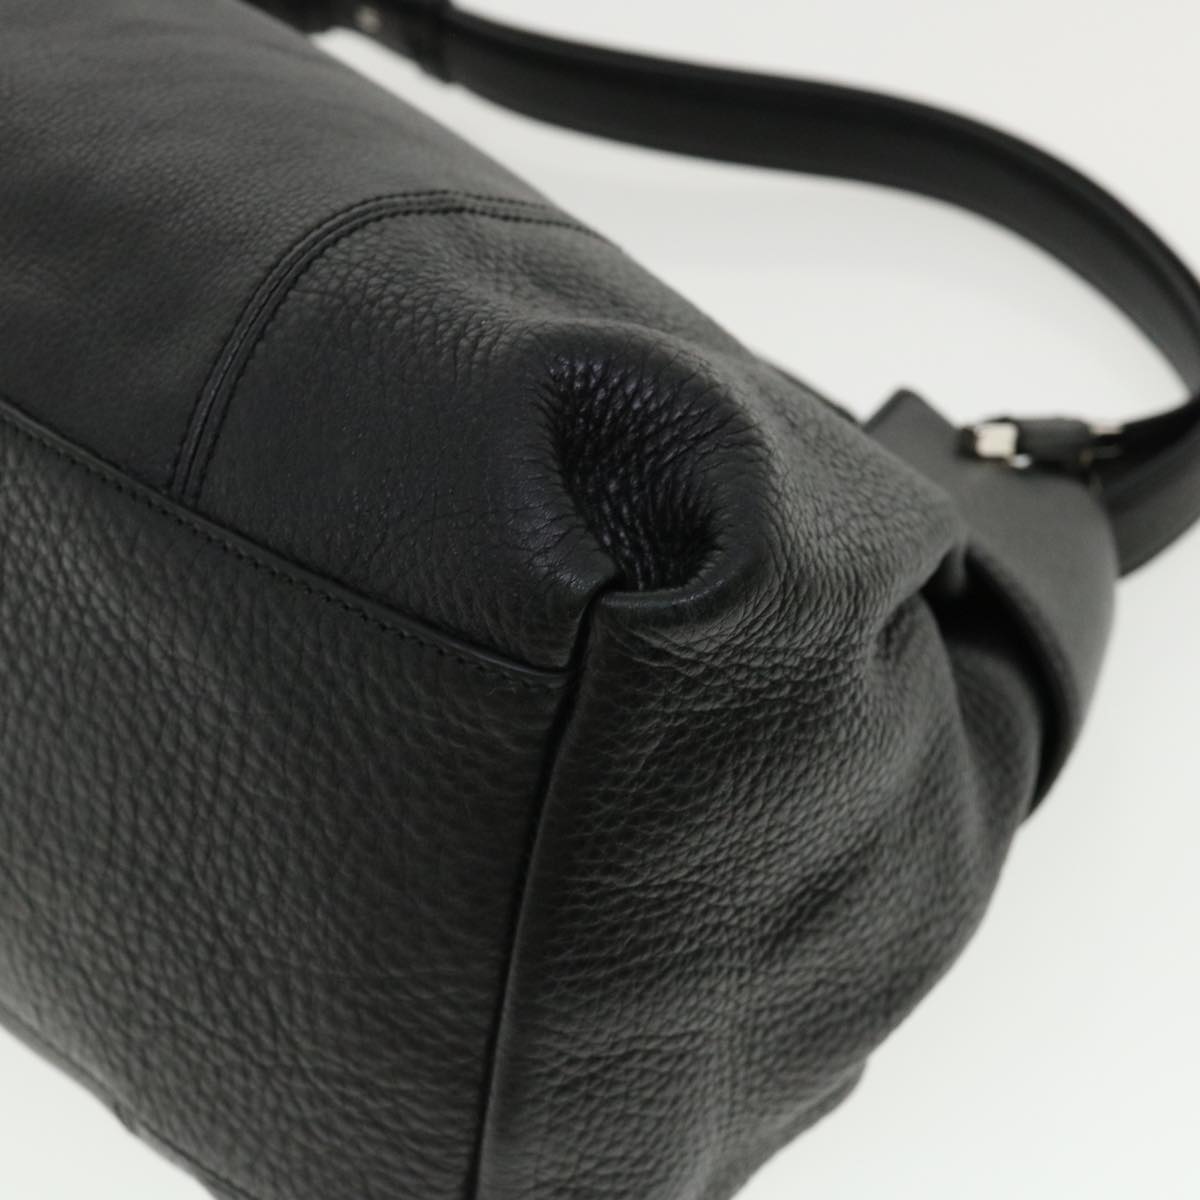 Salvatore Ferragamo Hand Bag Leather Black Auth 33126